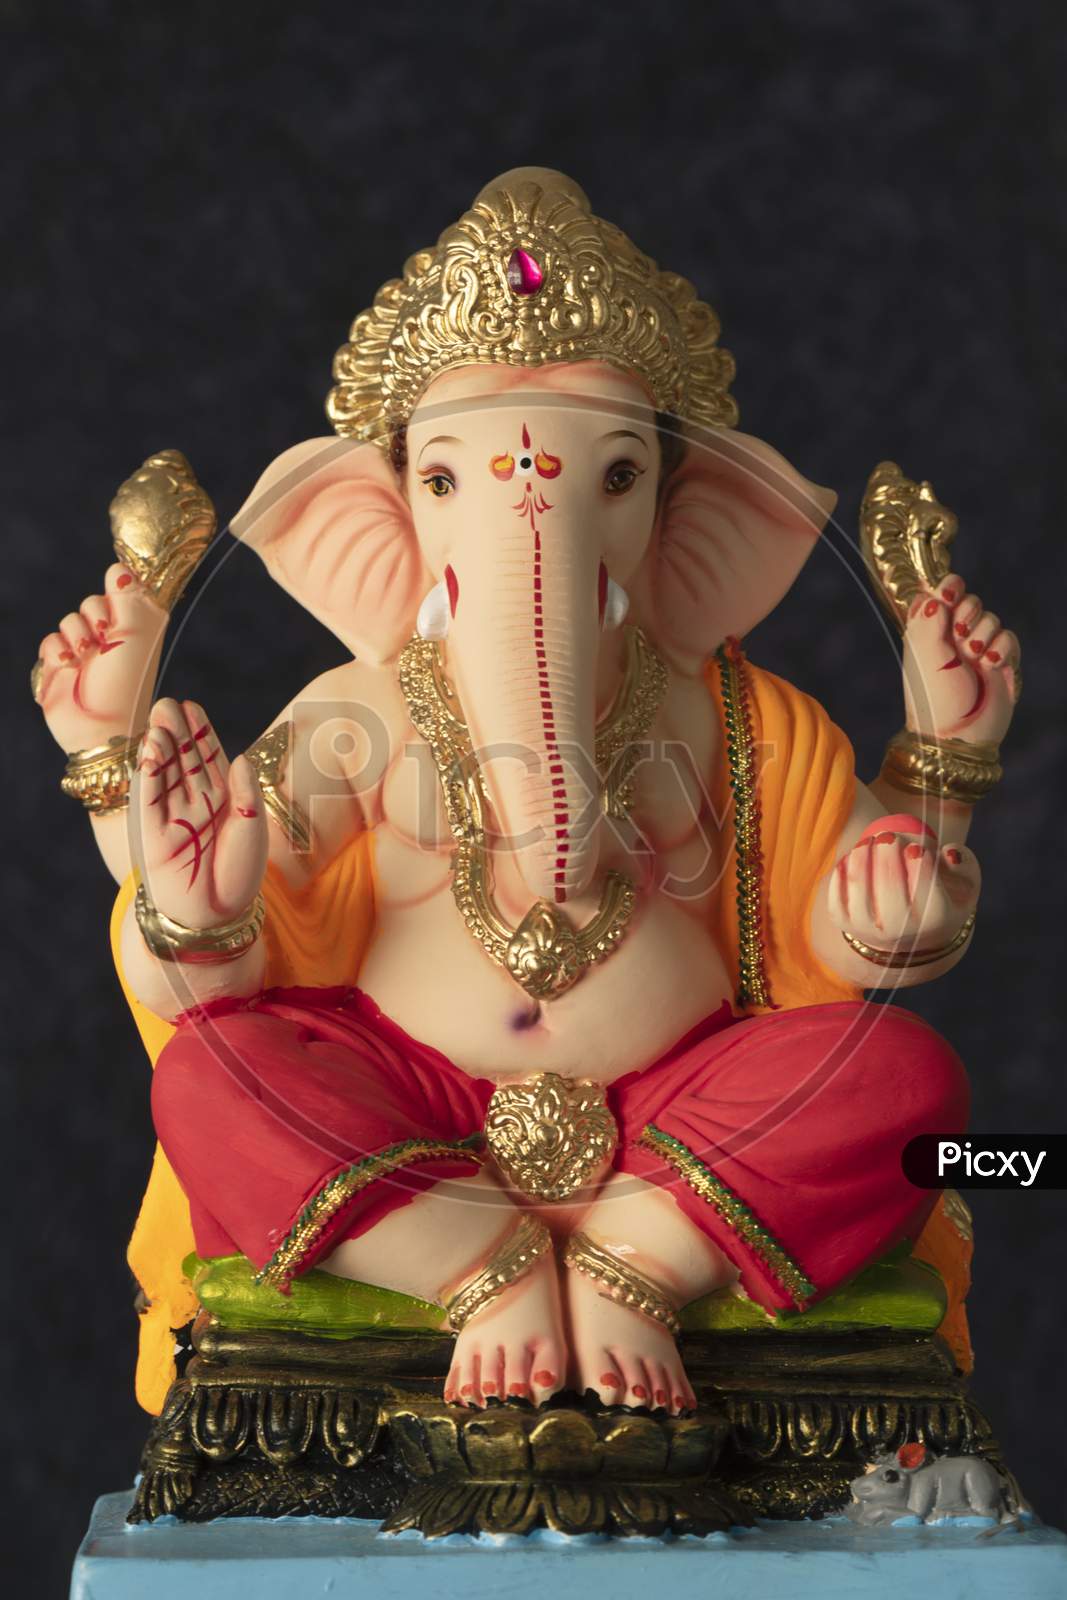 Idol of Lord Ganesha